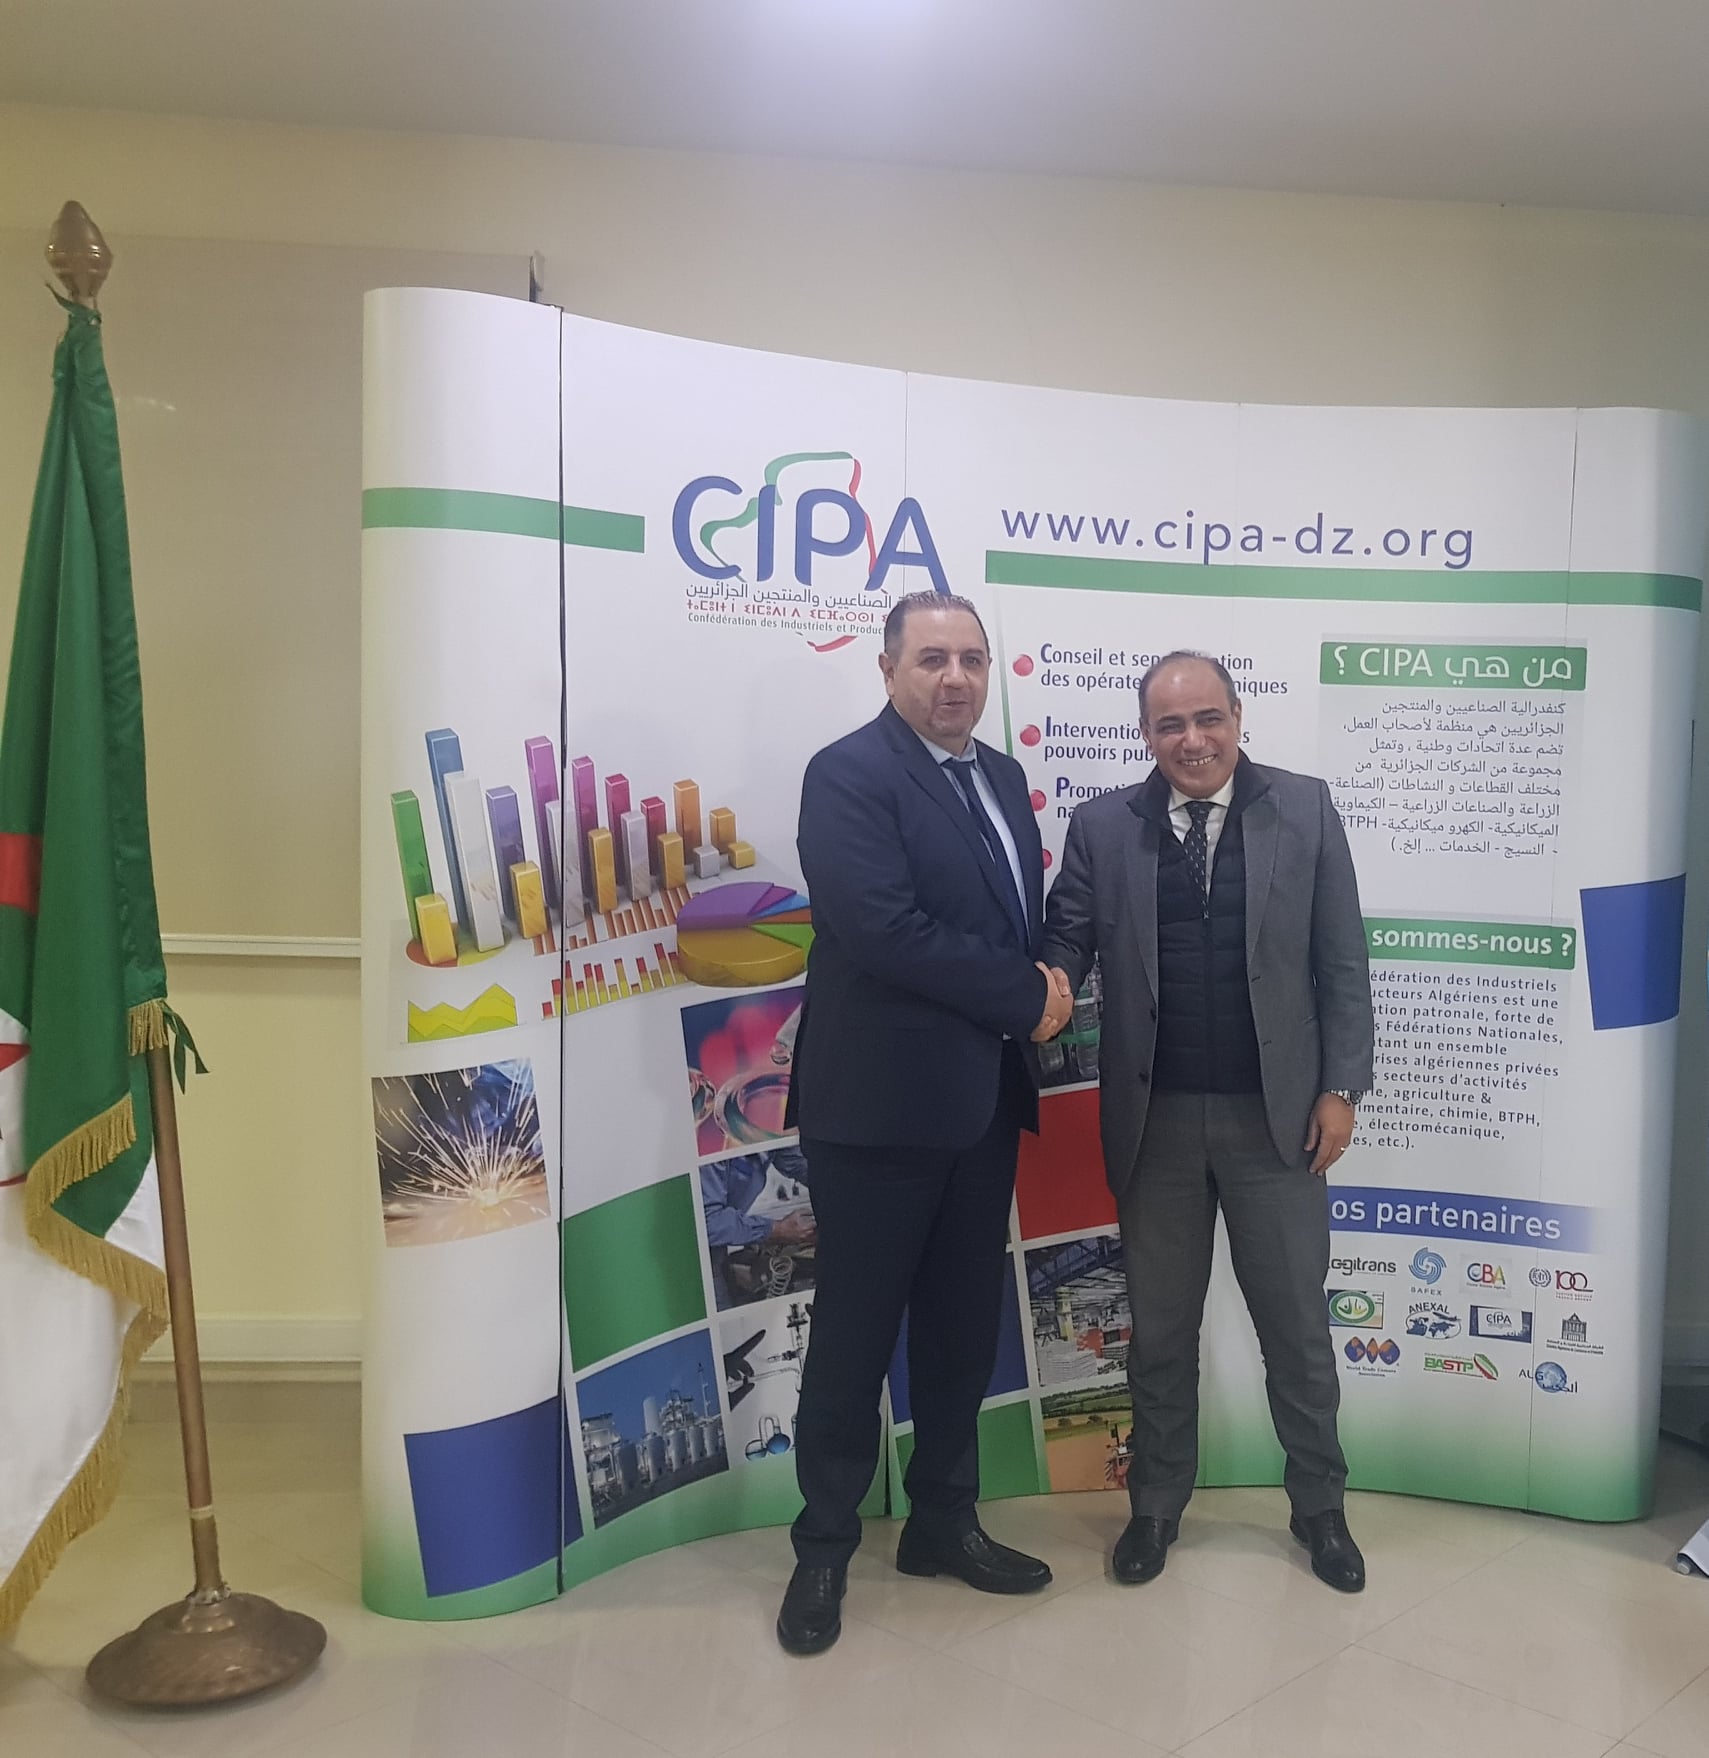 أليانس للتأمينات تبرم اتفاقية شراكة مع كنفدرالية الصناعيين و المنتجين الجزائريين(CIPA)